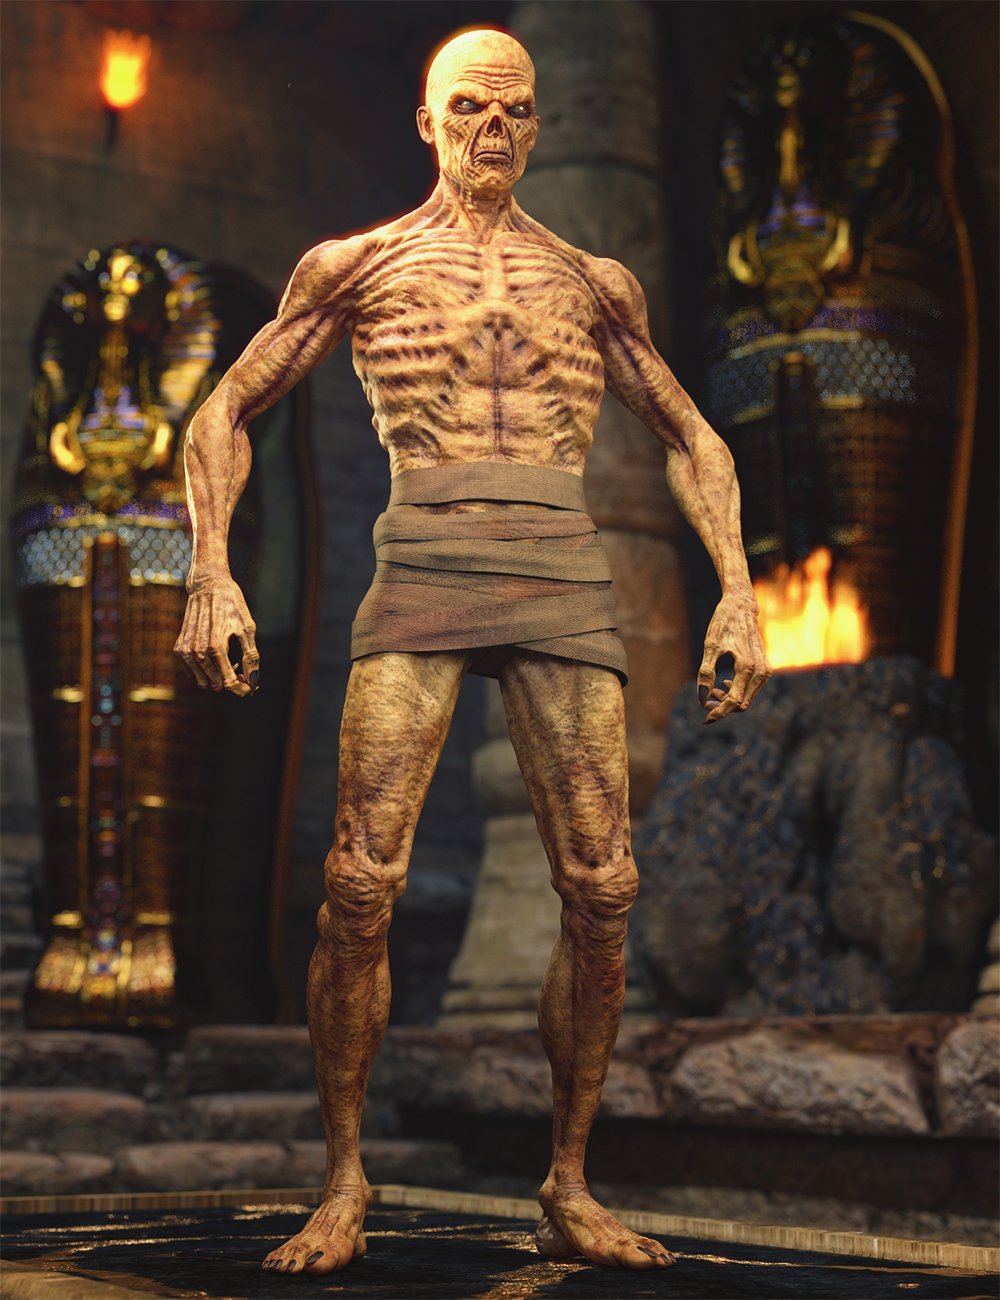 Mummy HD for Genesis 8 Male by: Josh Crockett, 3D Models by Daz 3D